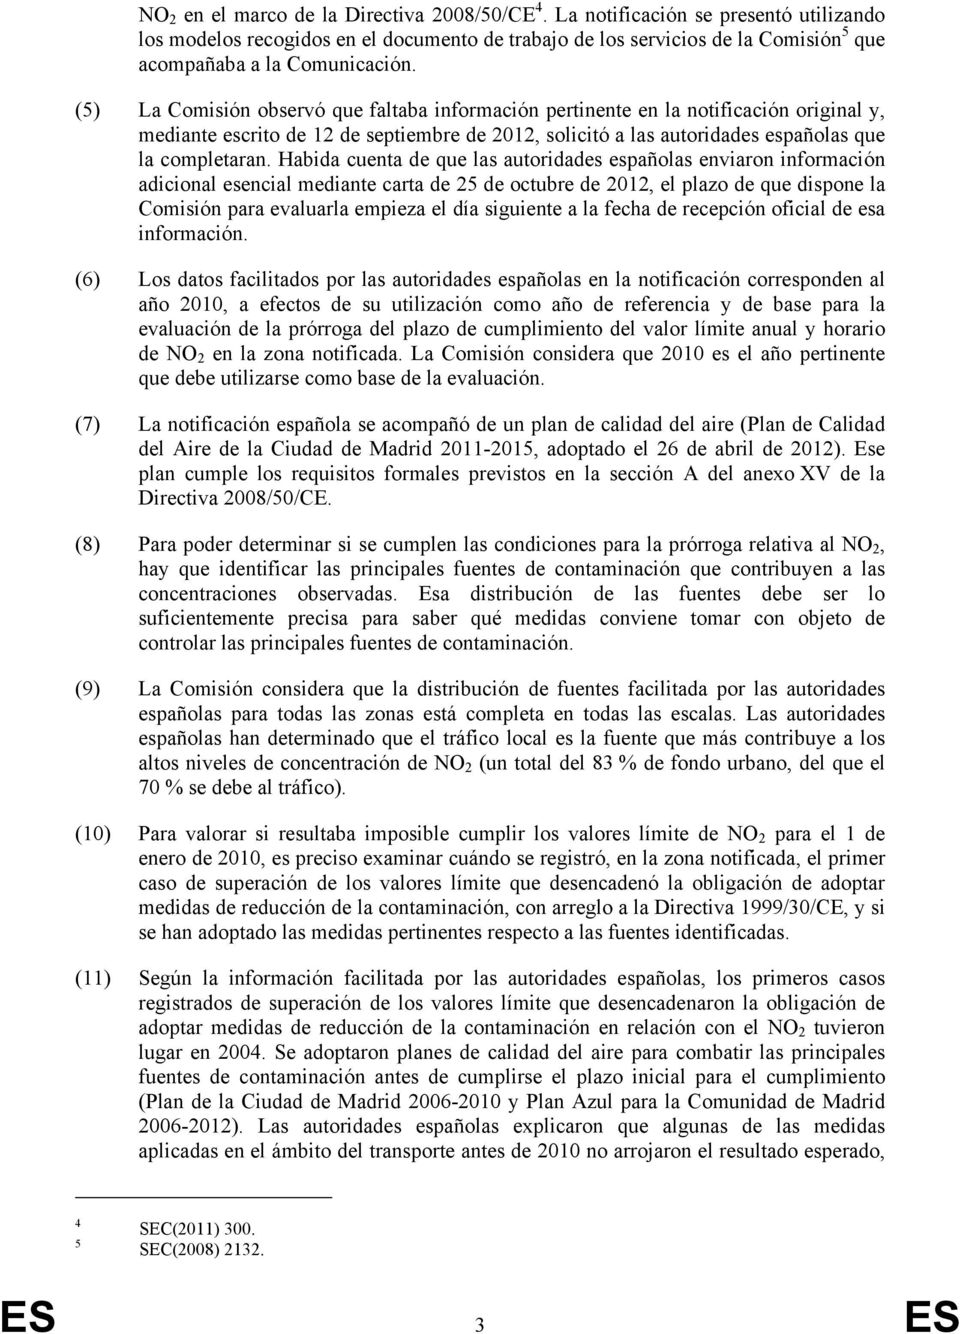 (5) La Comisión observó que faltaba información pertinente en la notificación original y, mediante escrito de 12 de septiembre de 2012, solicitó a las autoridades españolas que la completaran.